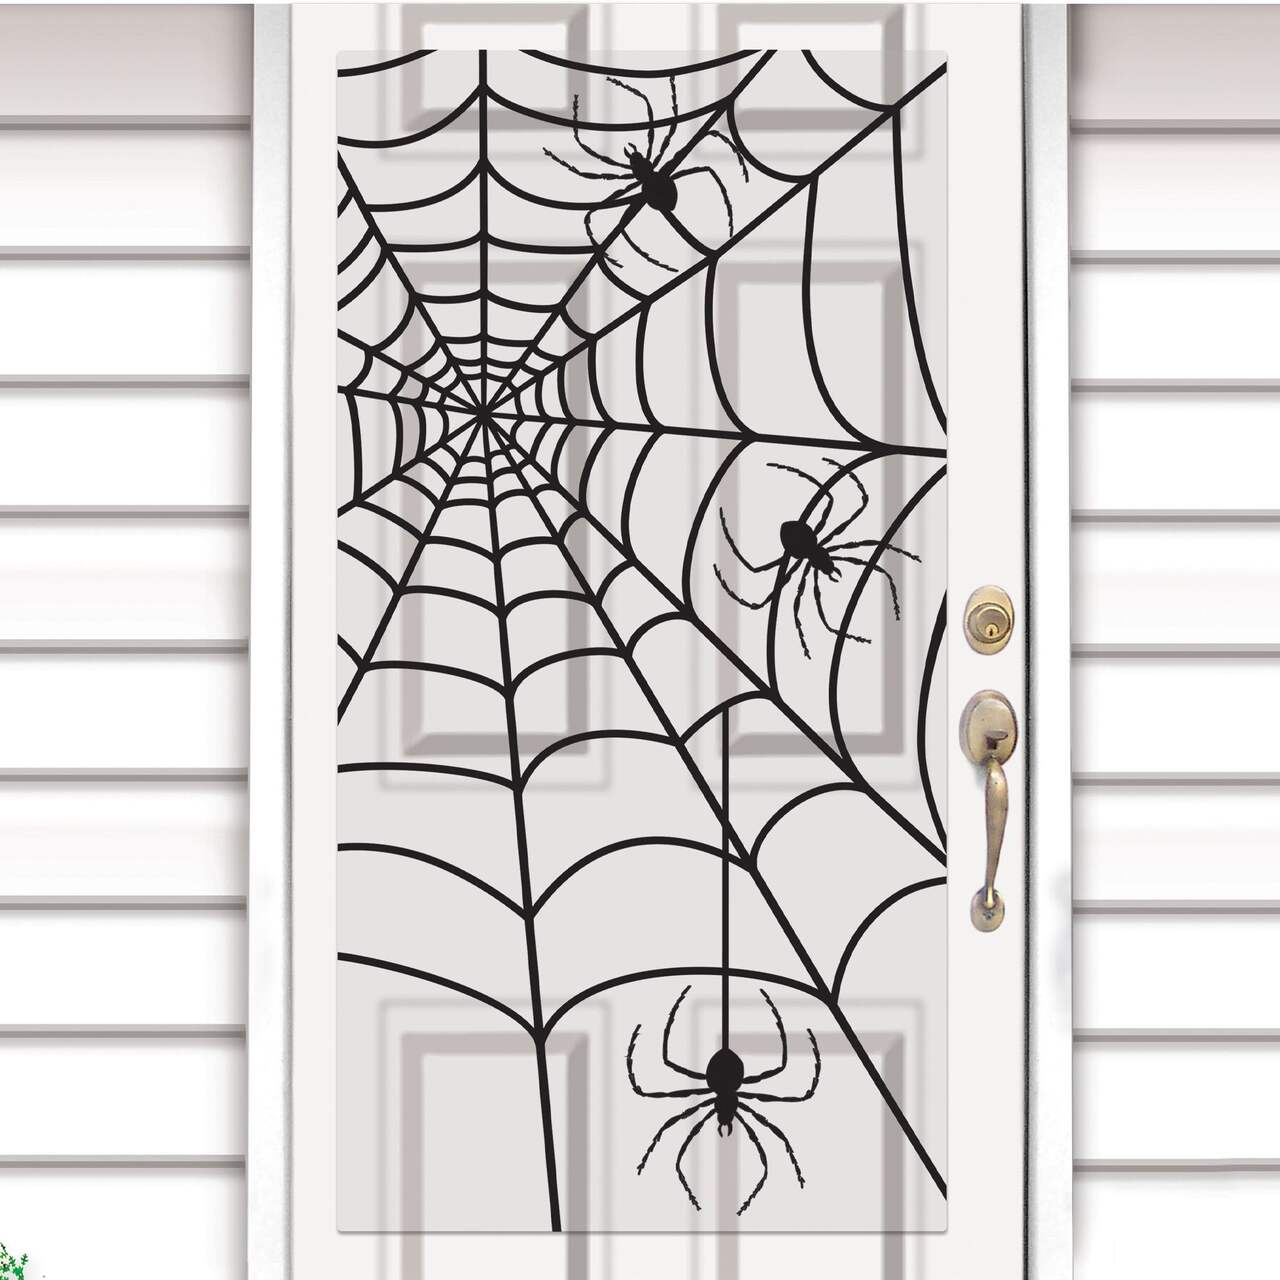 Masque Hallowen décoré araignée